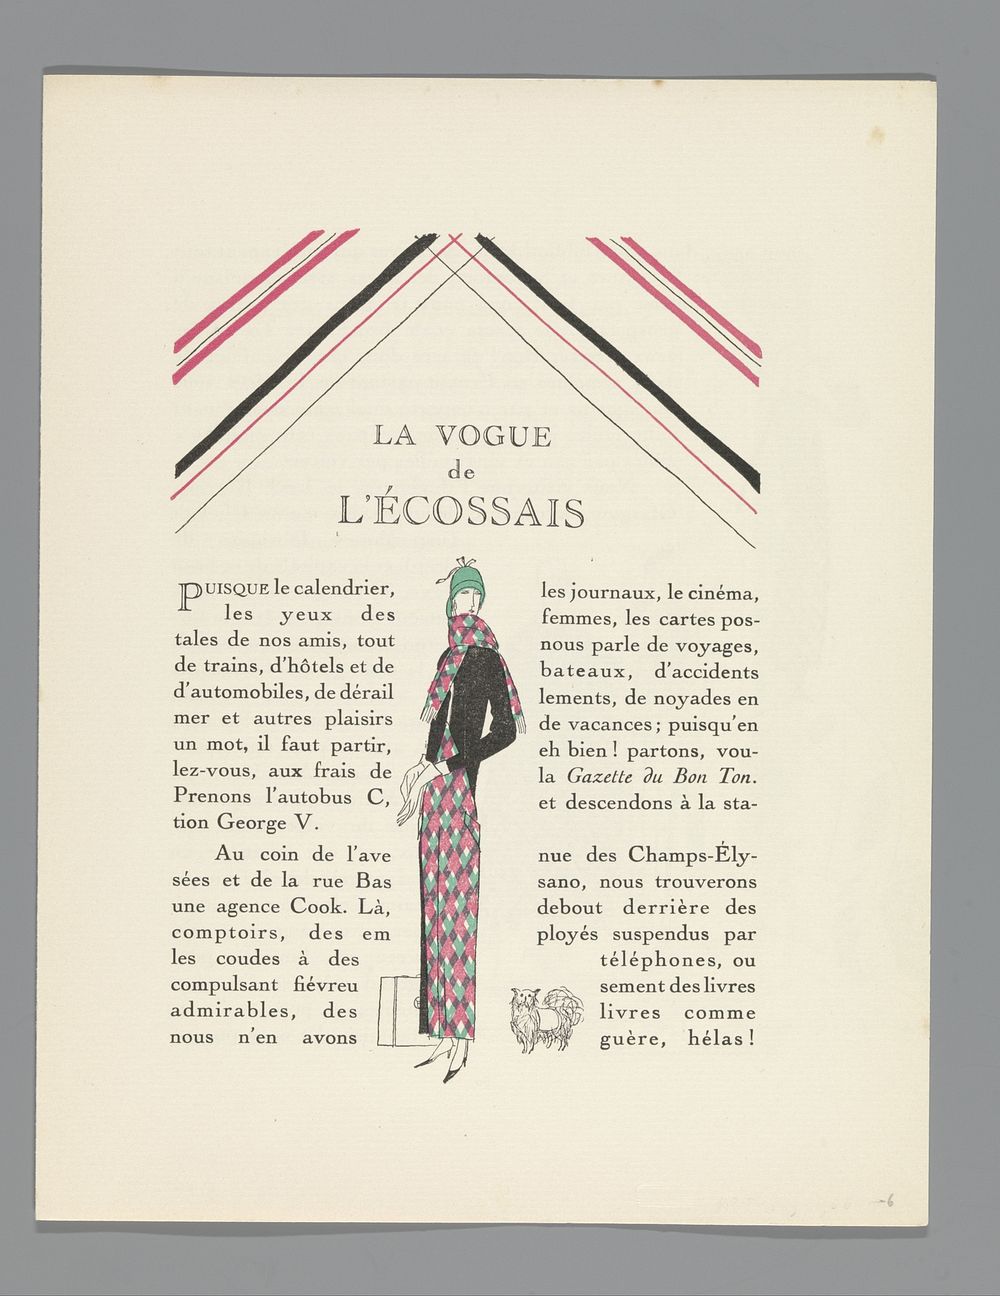 Gazette du Bon Ton, No. 2 - 1923, 6e Année, p. 49: La Vogue de l'Écossais (1923) by Lucien Vogel and Imprimerie Studium